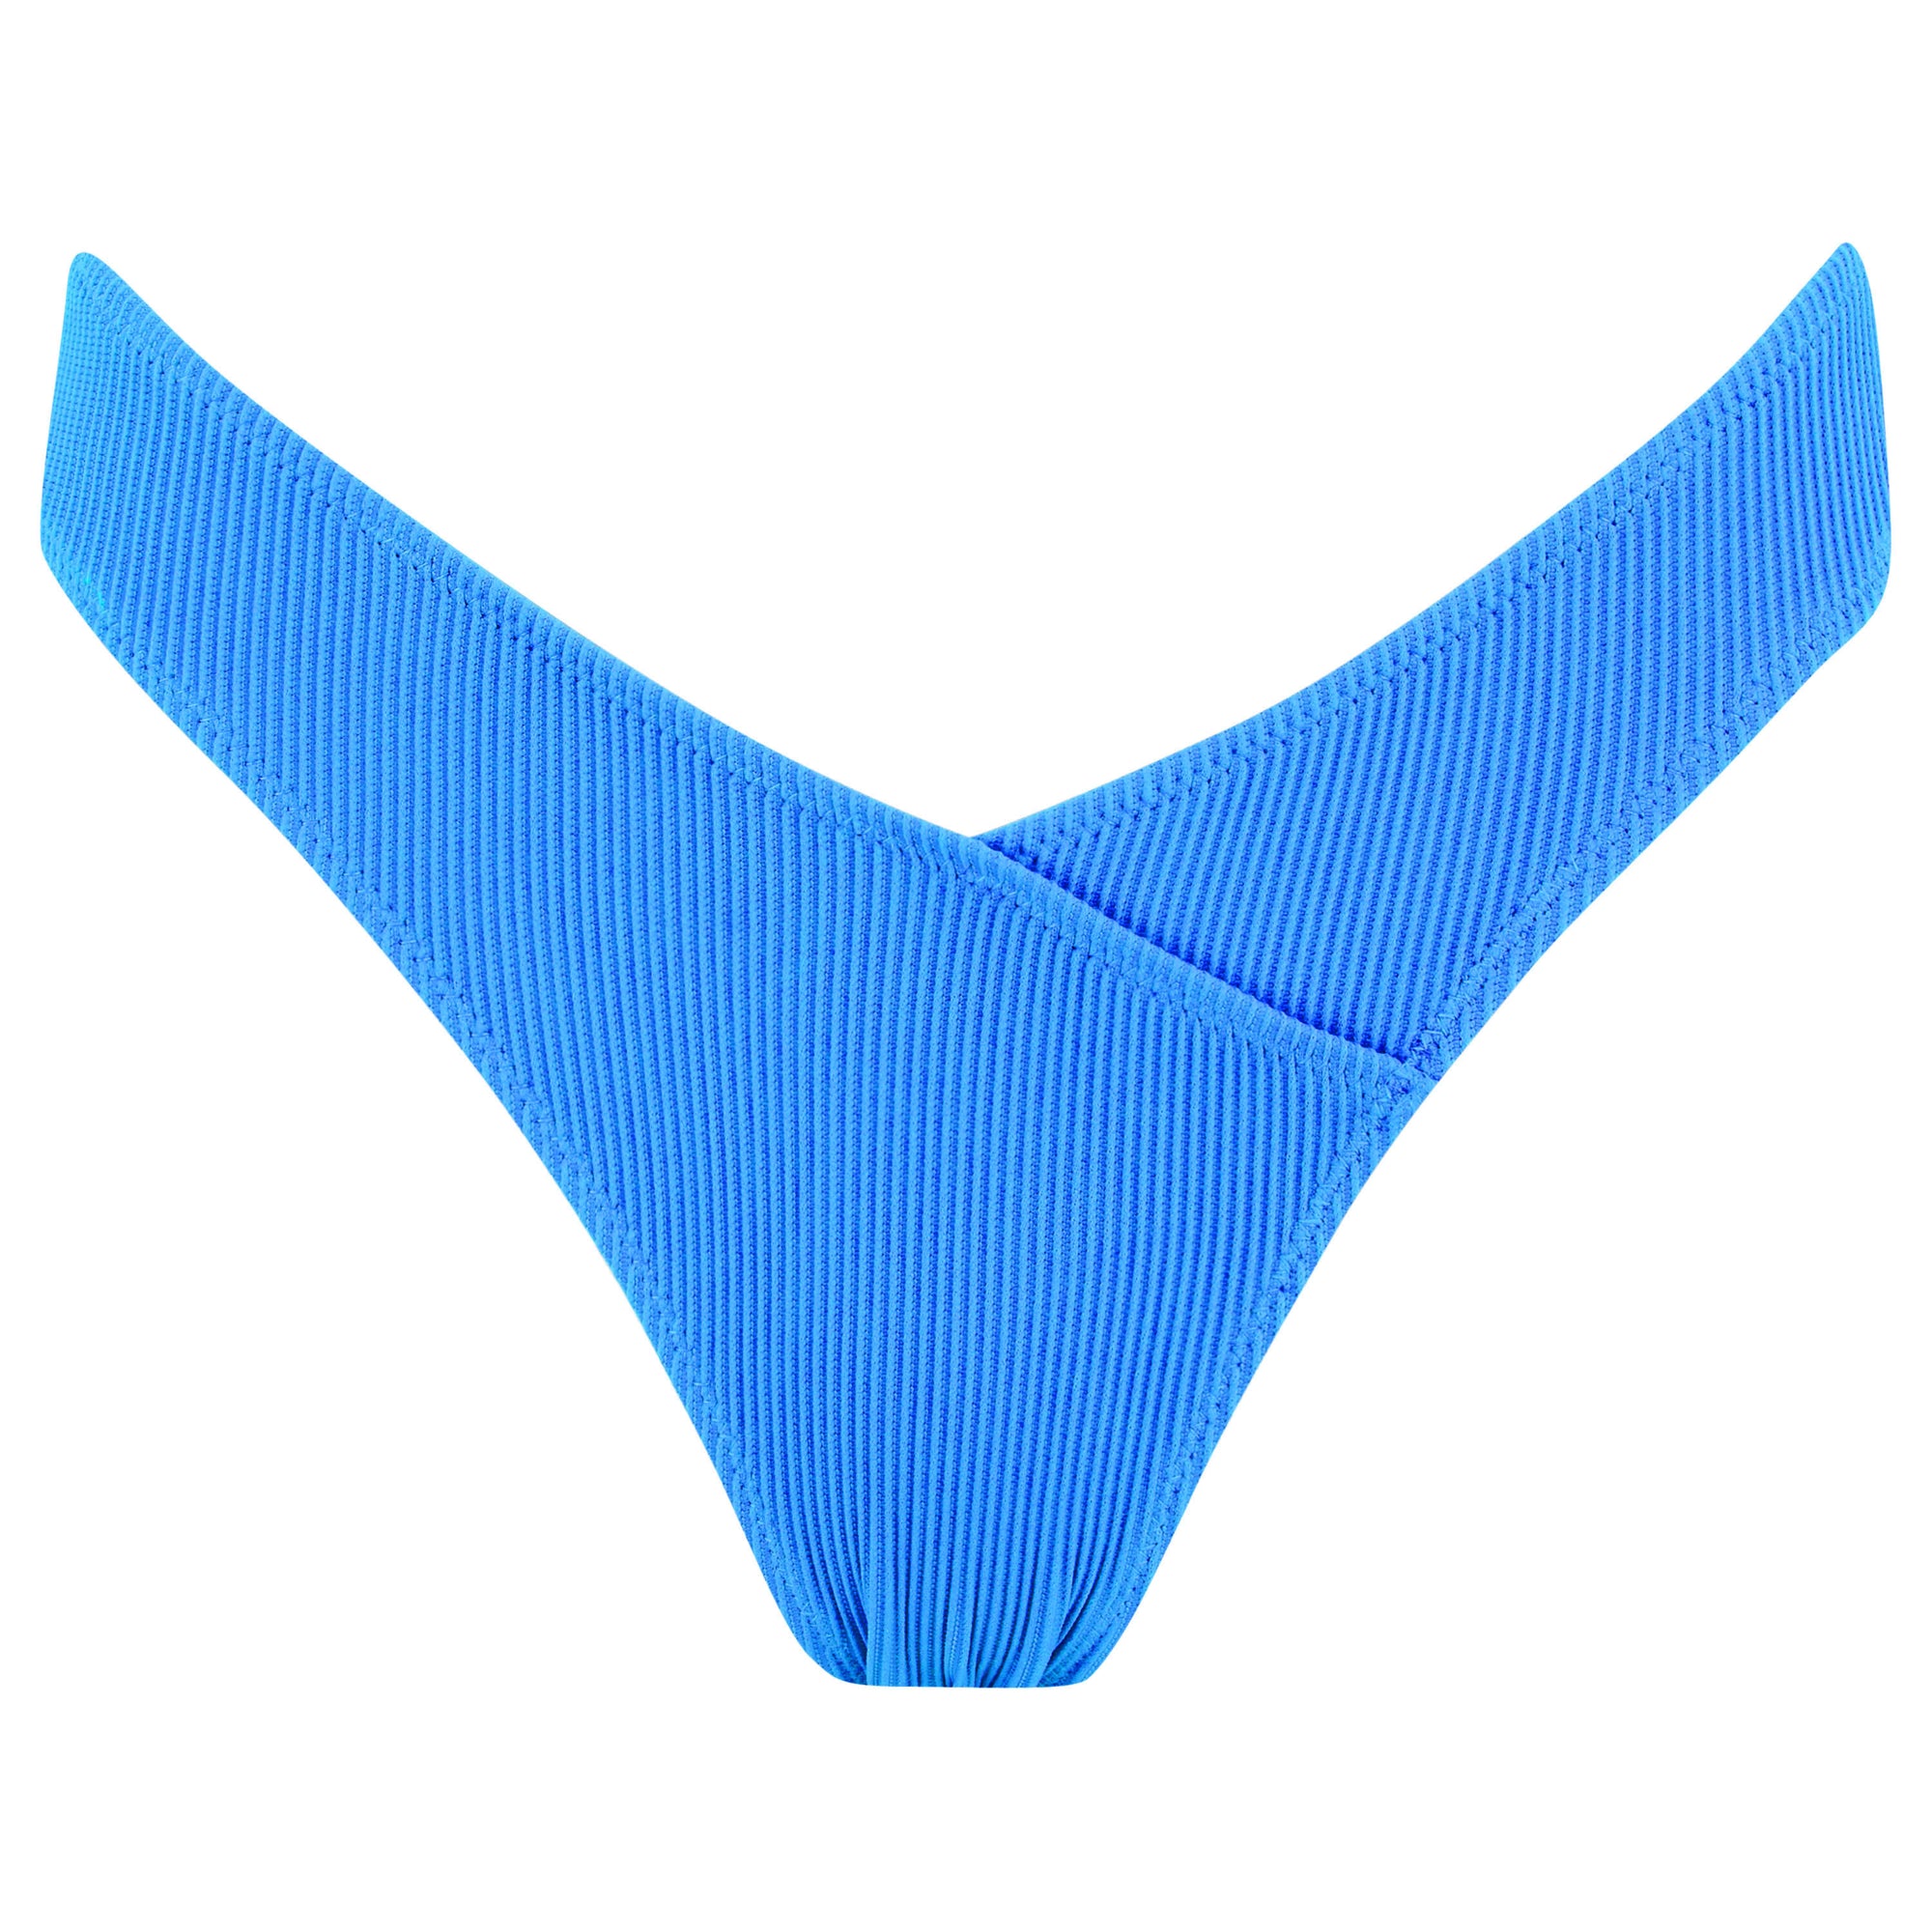 FULL TILT Picot Trim High Leg Bikini Panties - BLUE COMBO